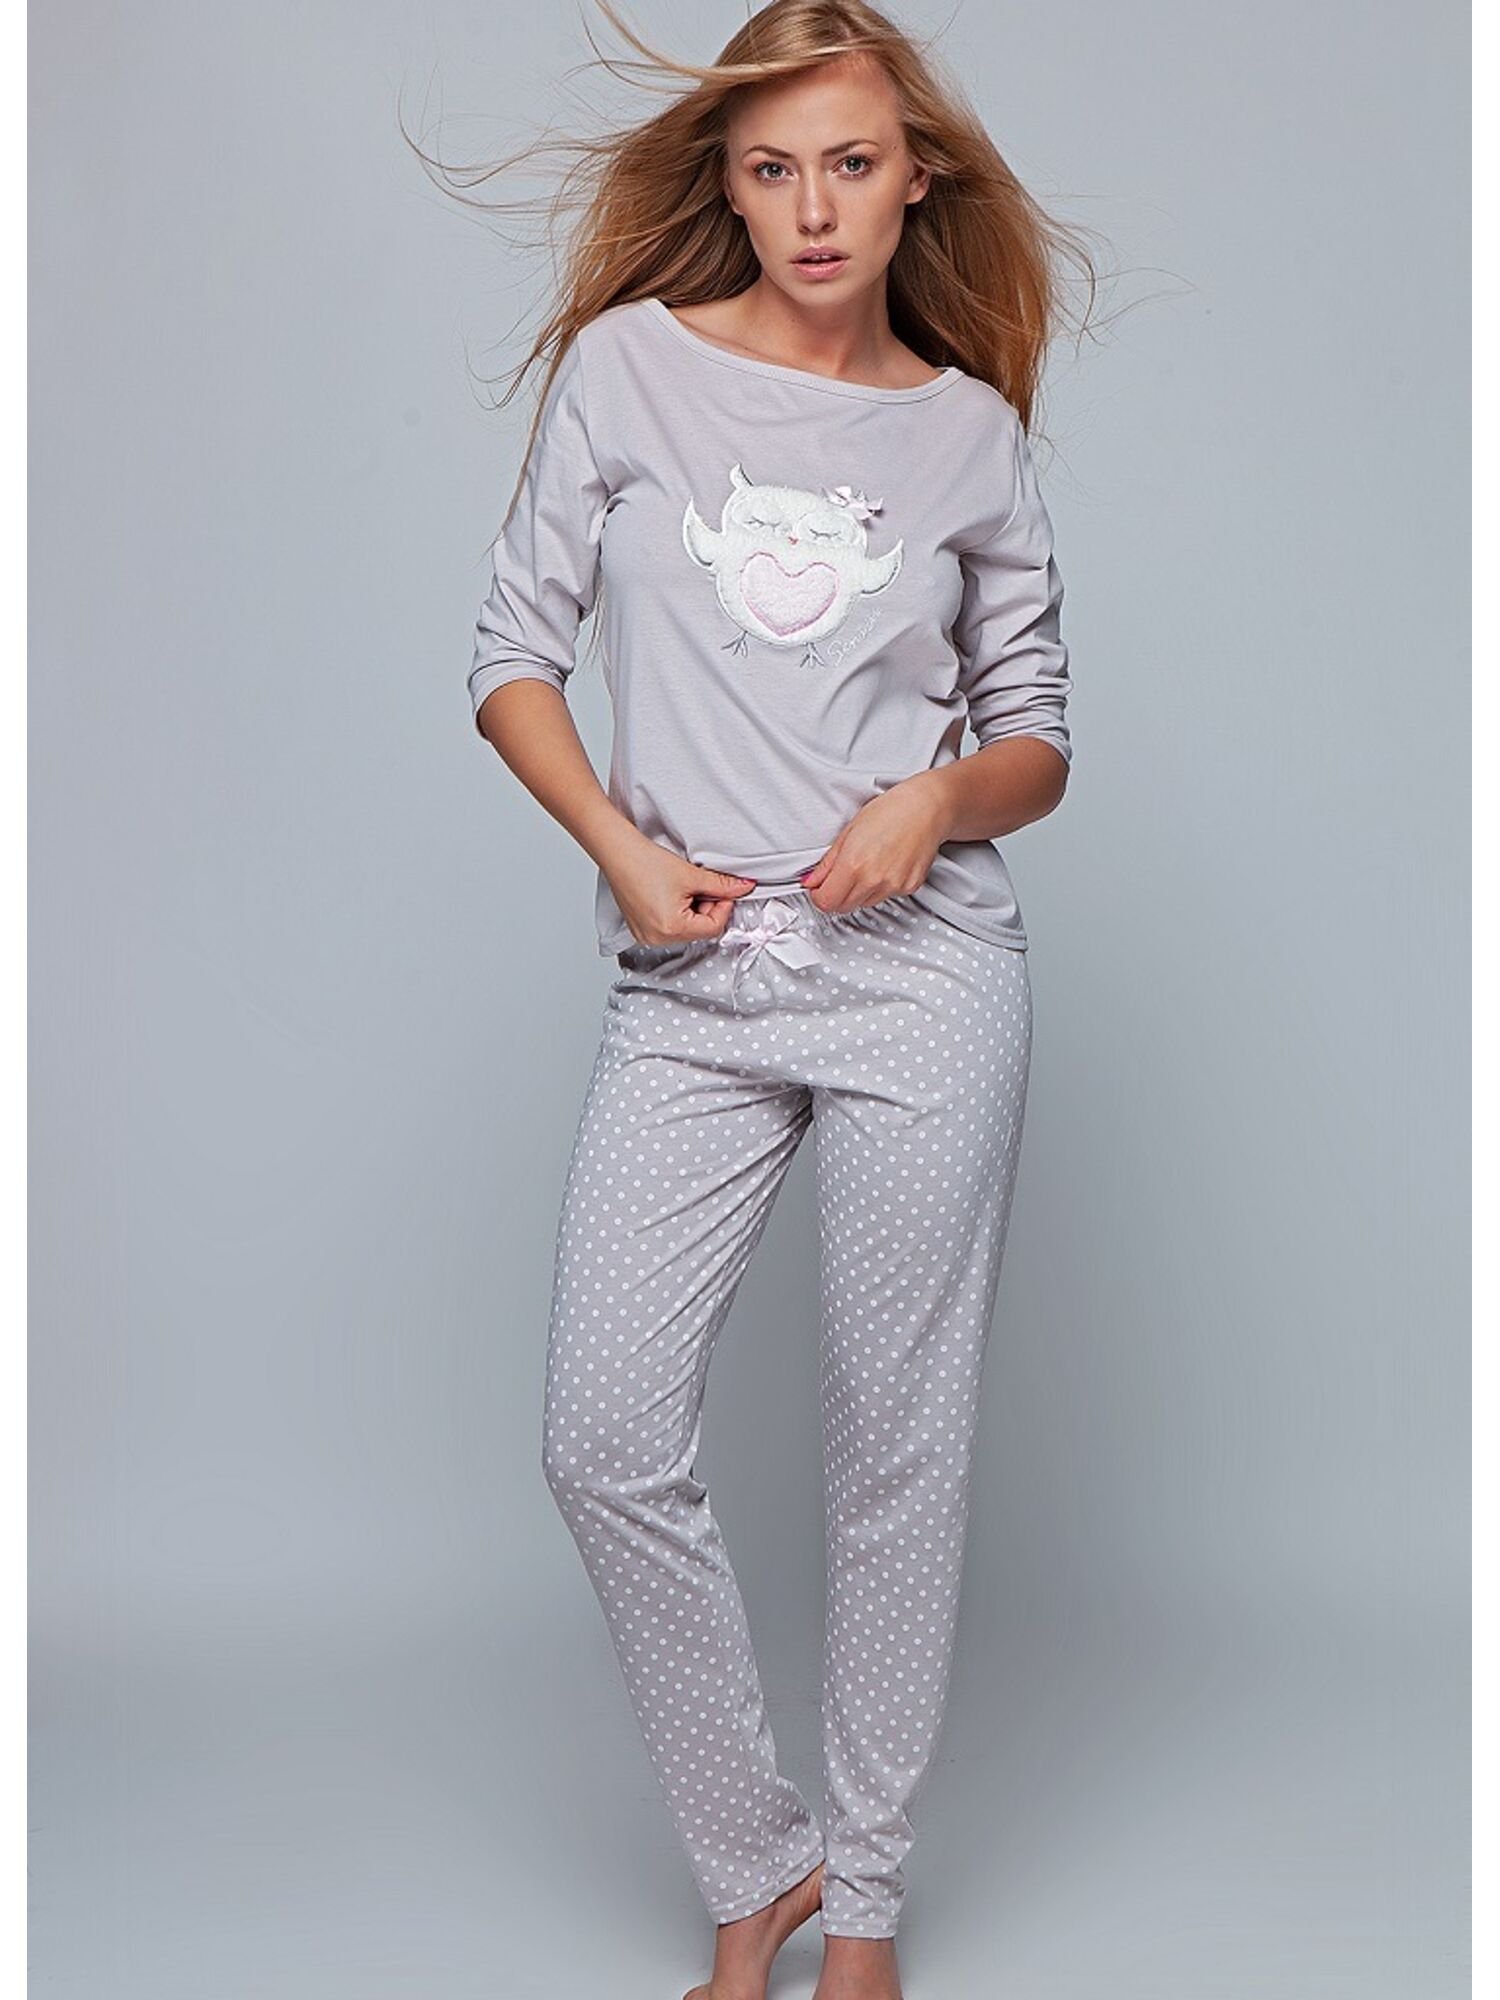 Производители домашней одежды. Пижама Sensis, размер s, мокко. Пижама Sensis, 42 (XL), белый. Пижамы сенсис с брюками. Sensis пижама Golden, серый, m.